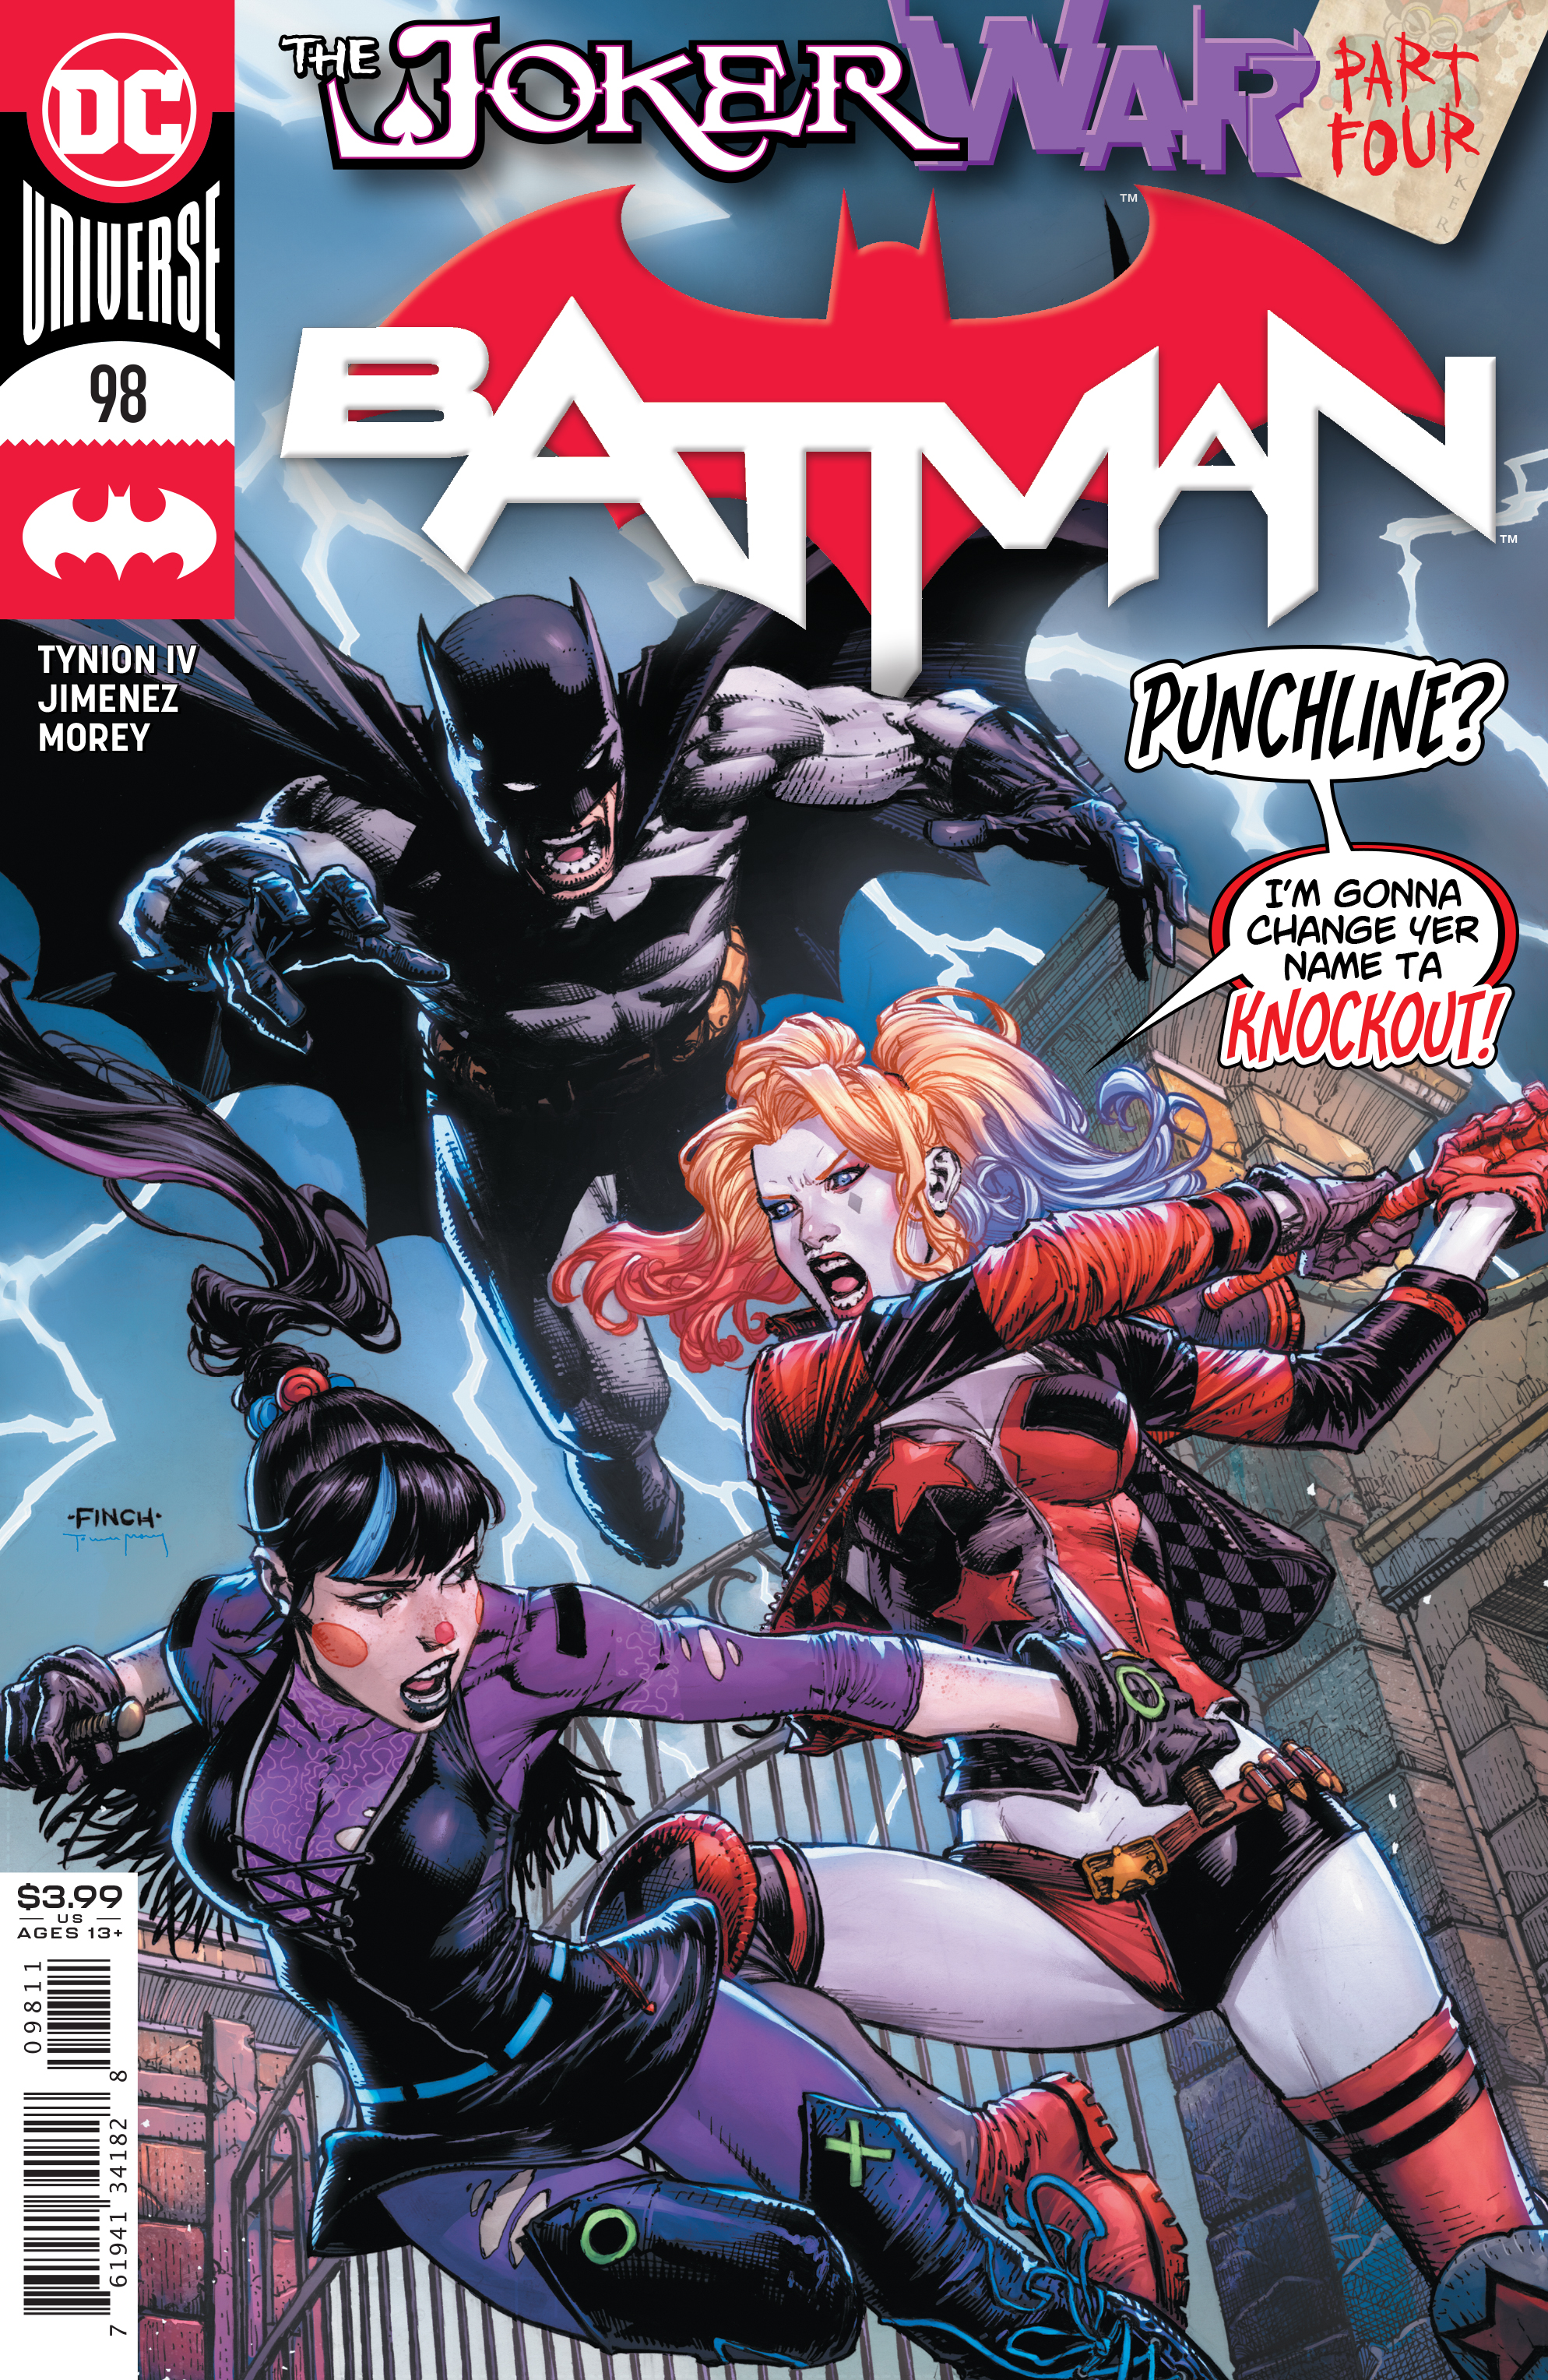 Batman #98 Cover A David Finch (Joker War) (2016)